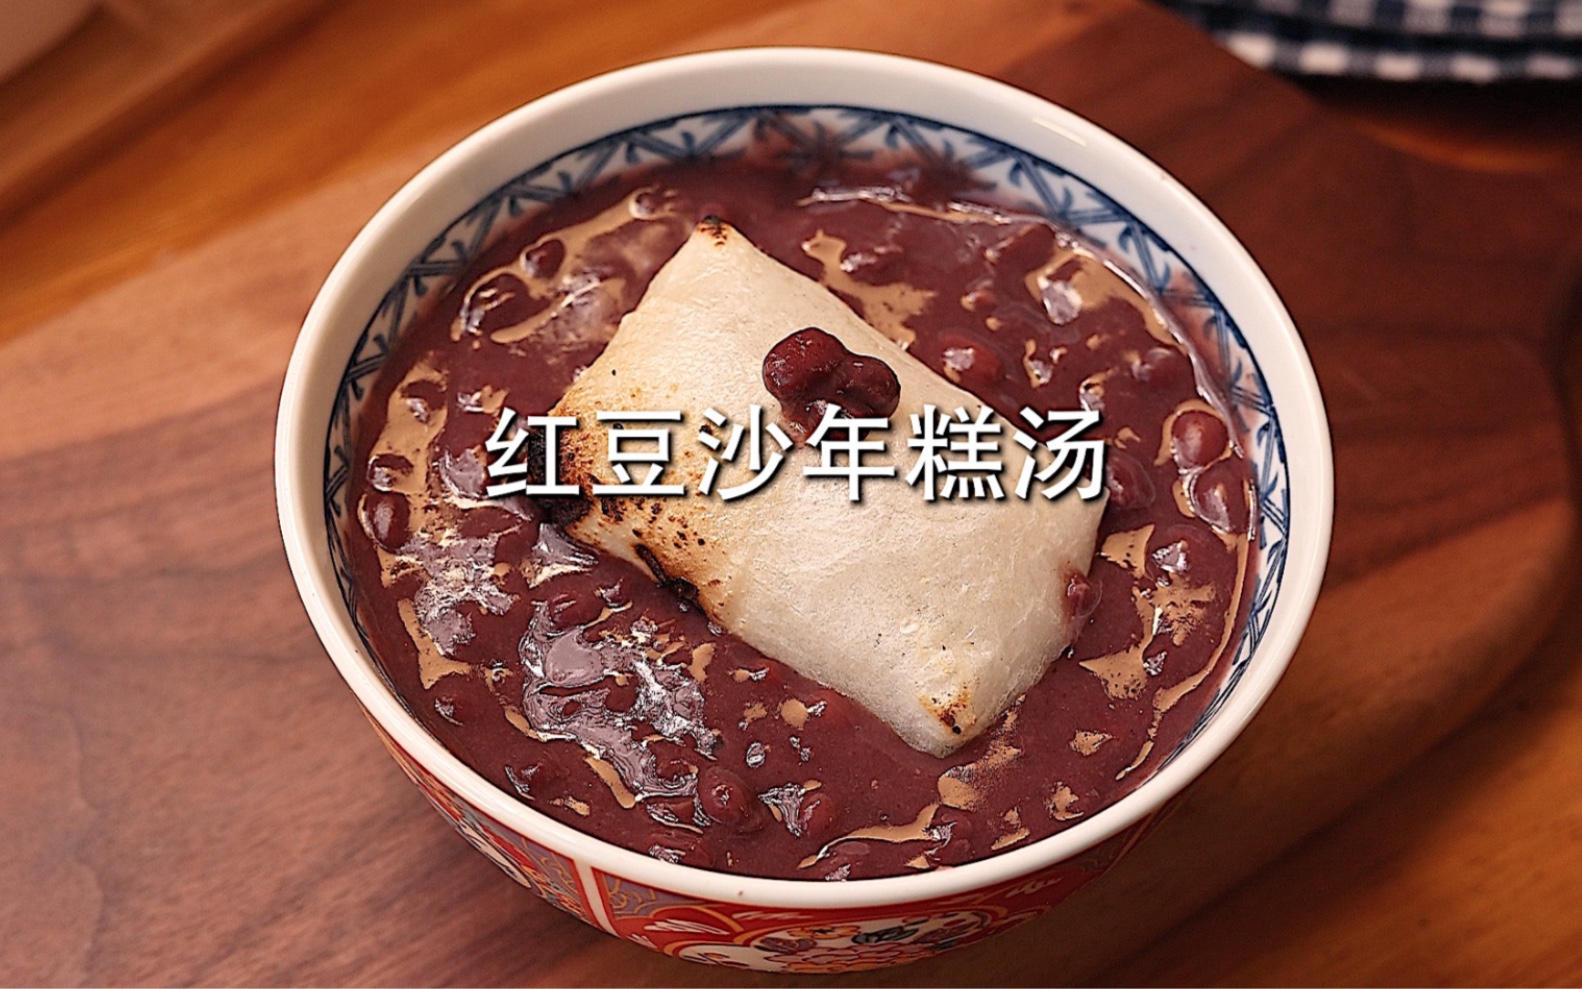 日式烤年糕红豆沙😋冬天就要来一碗热fufu的敲暖胃